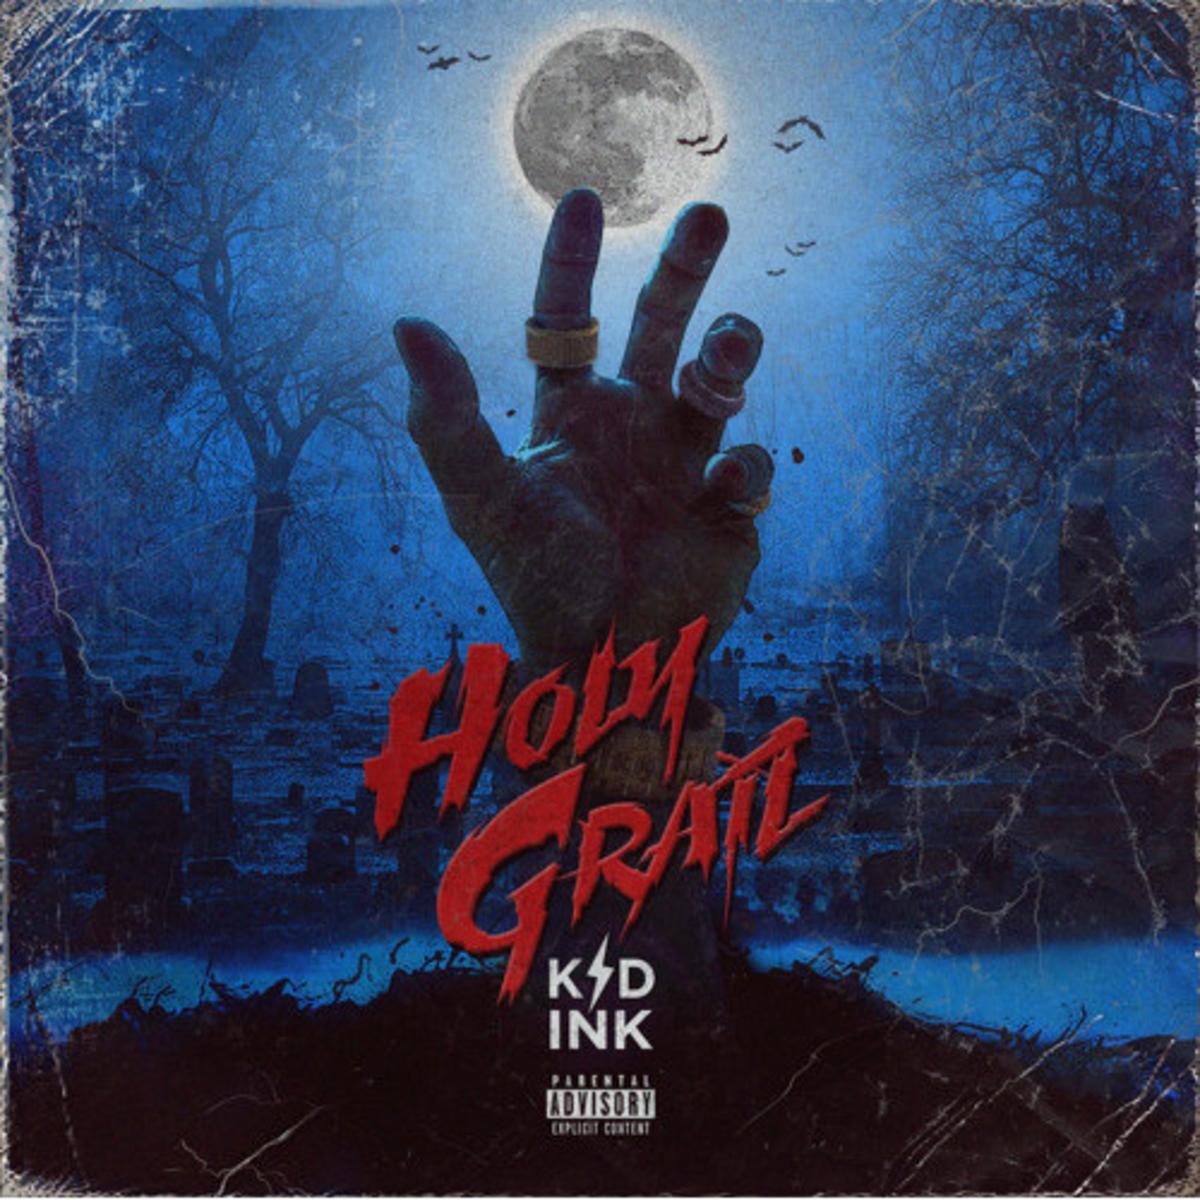 Kid Ink – “Holy Grail” [Audio]